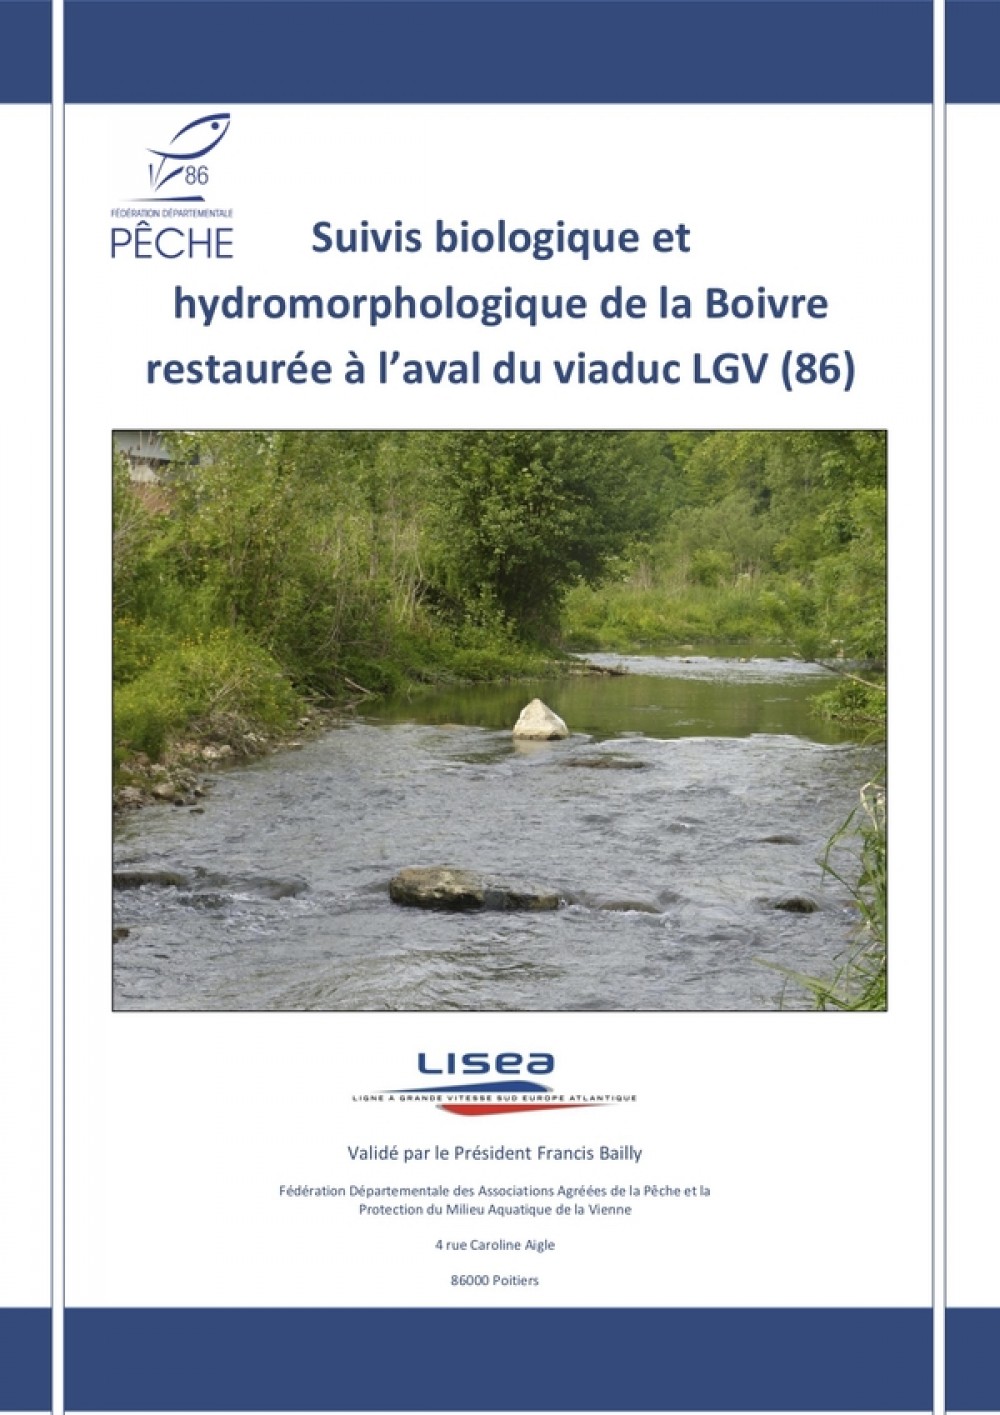 [Publication] Suivis biologique et hydromorphologique de la Boivre restaurée à l'aval du viaduc LGV